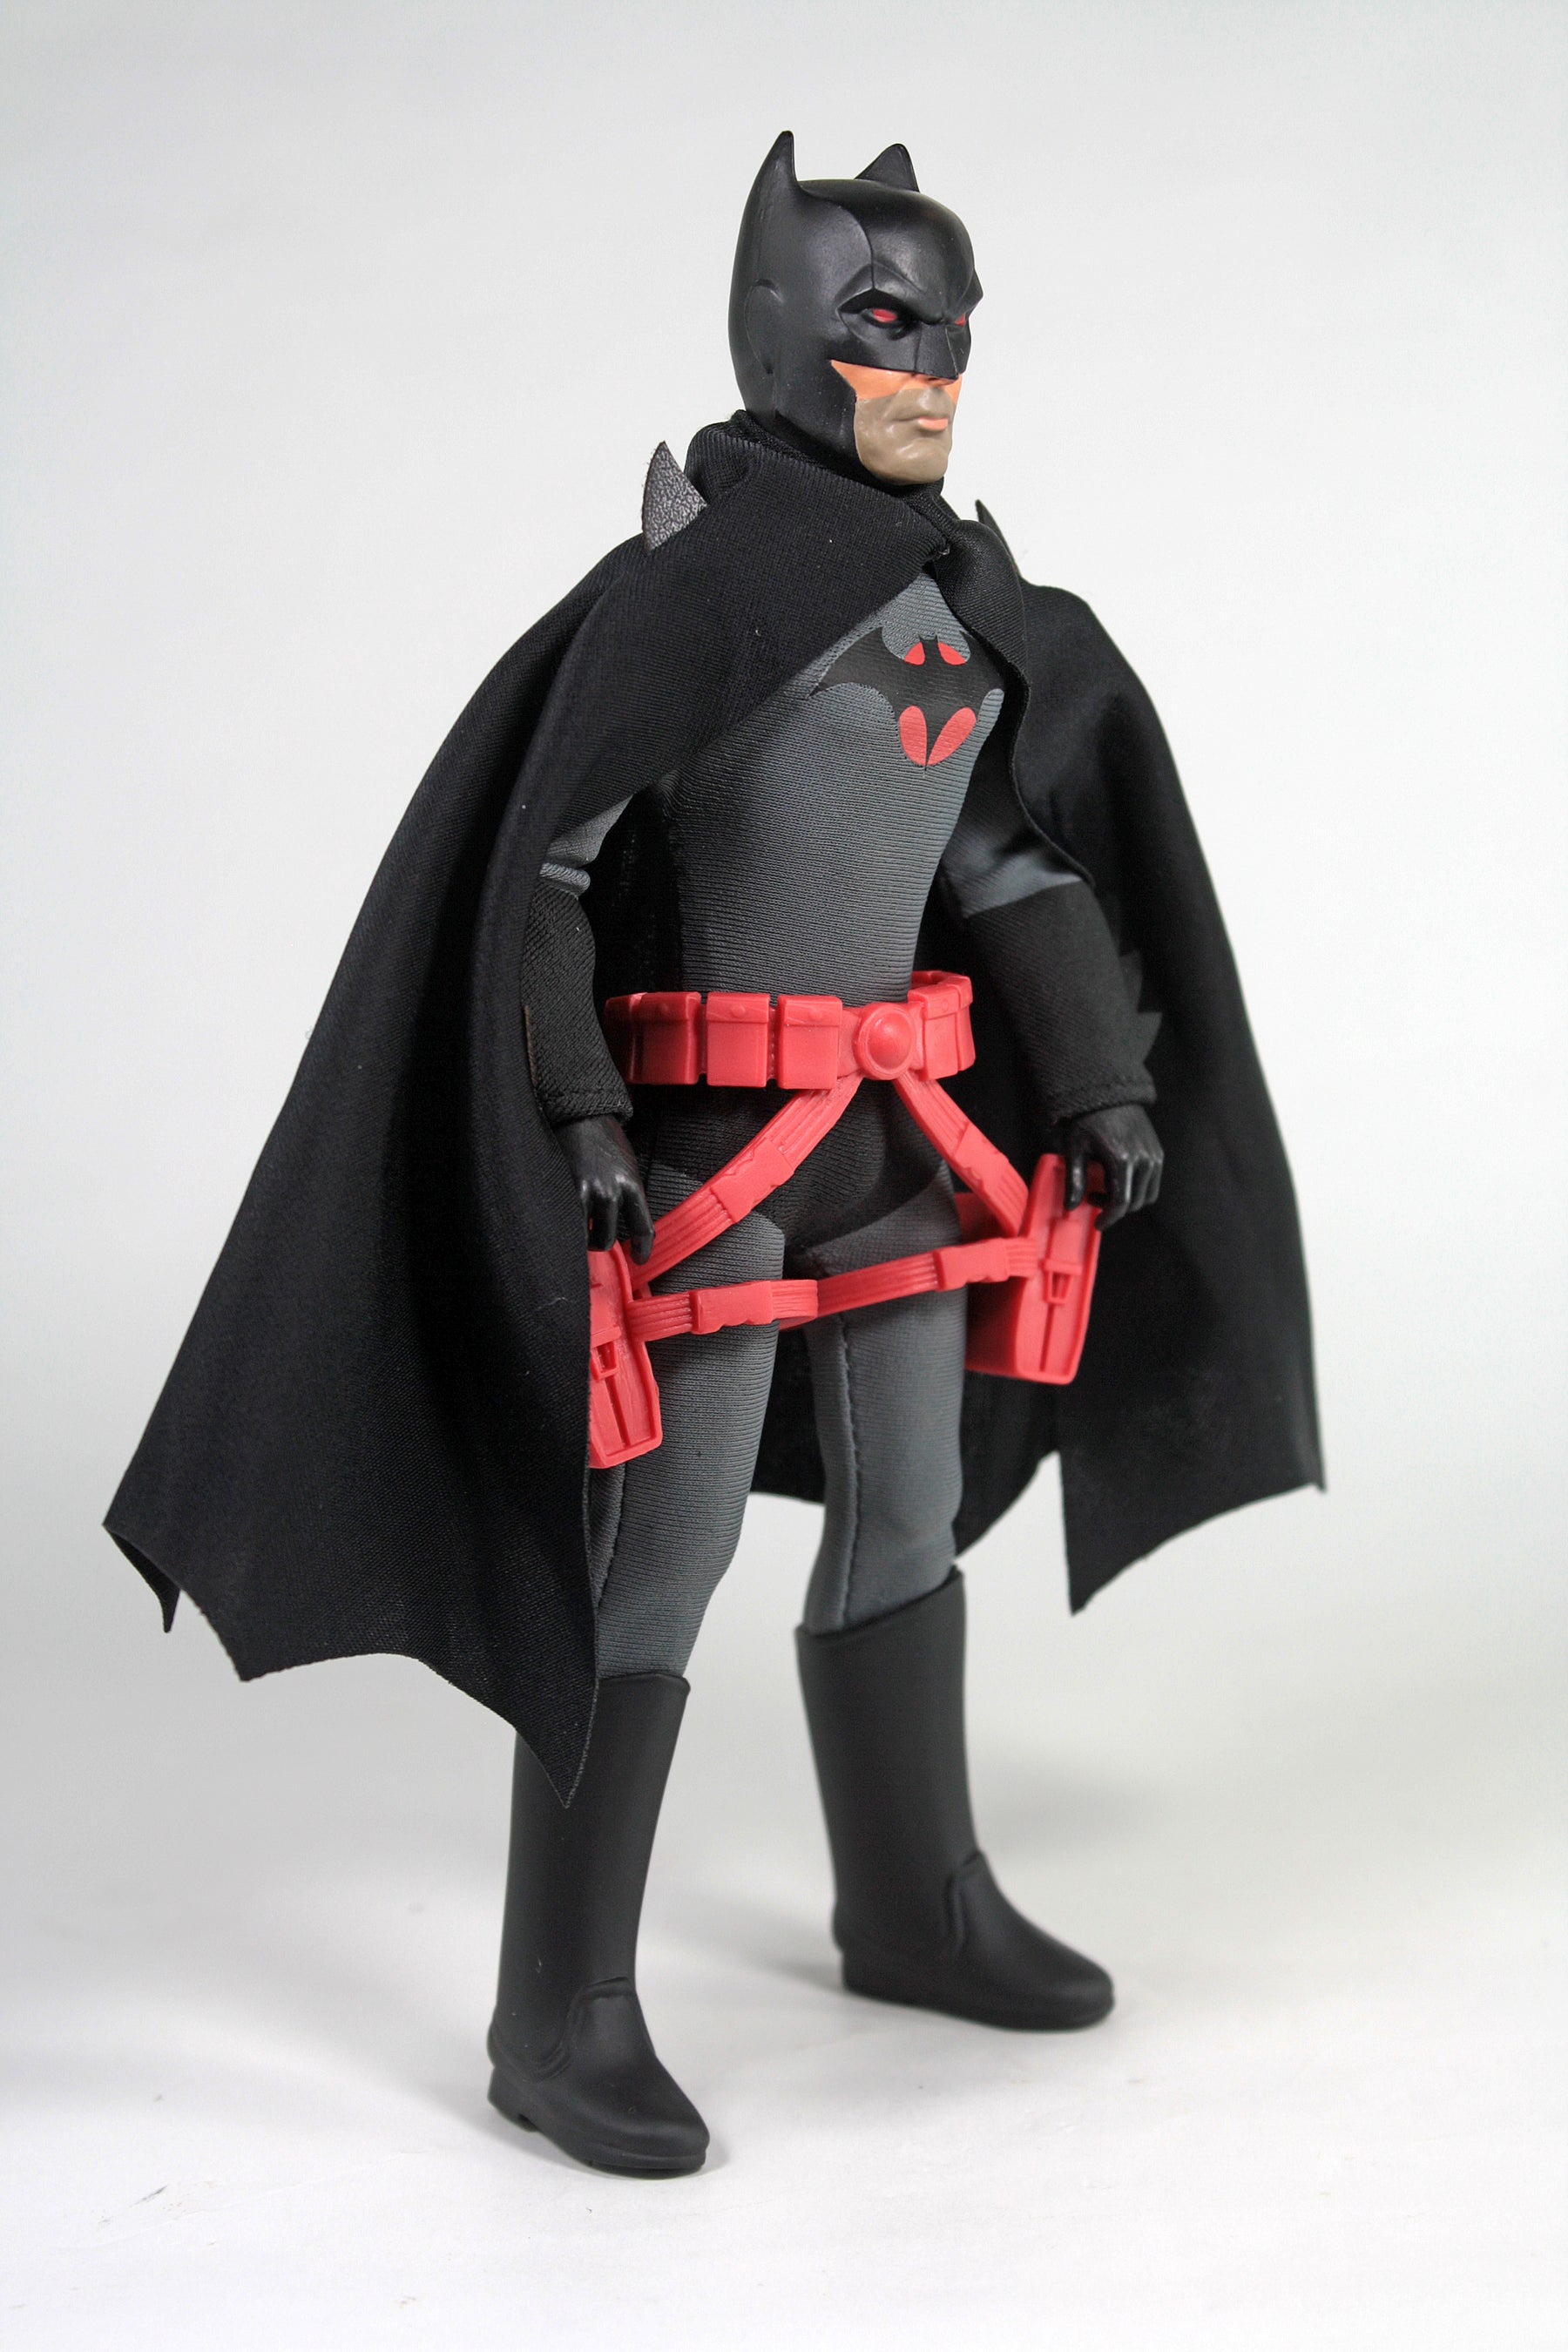 MEGO DC Flashpoint Batman 8" Action Figure (PX Previews Exclusive)